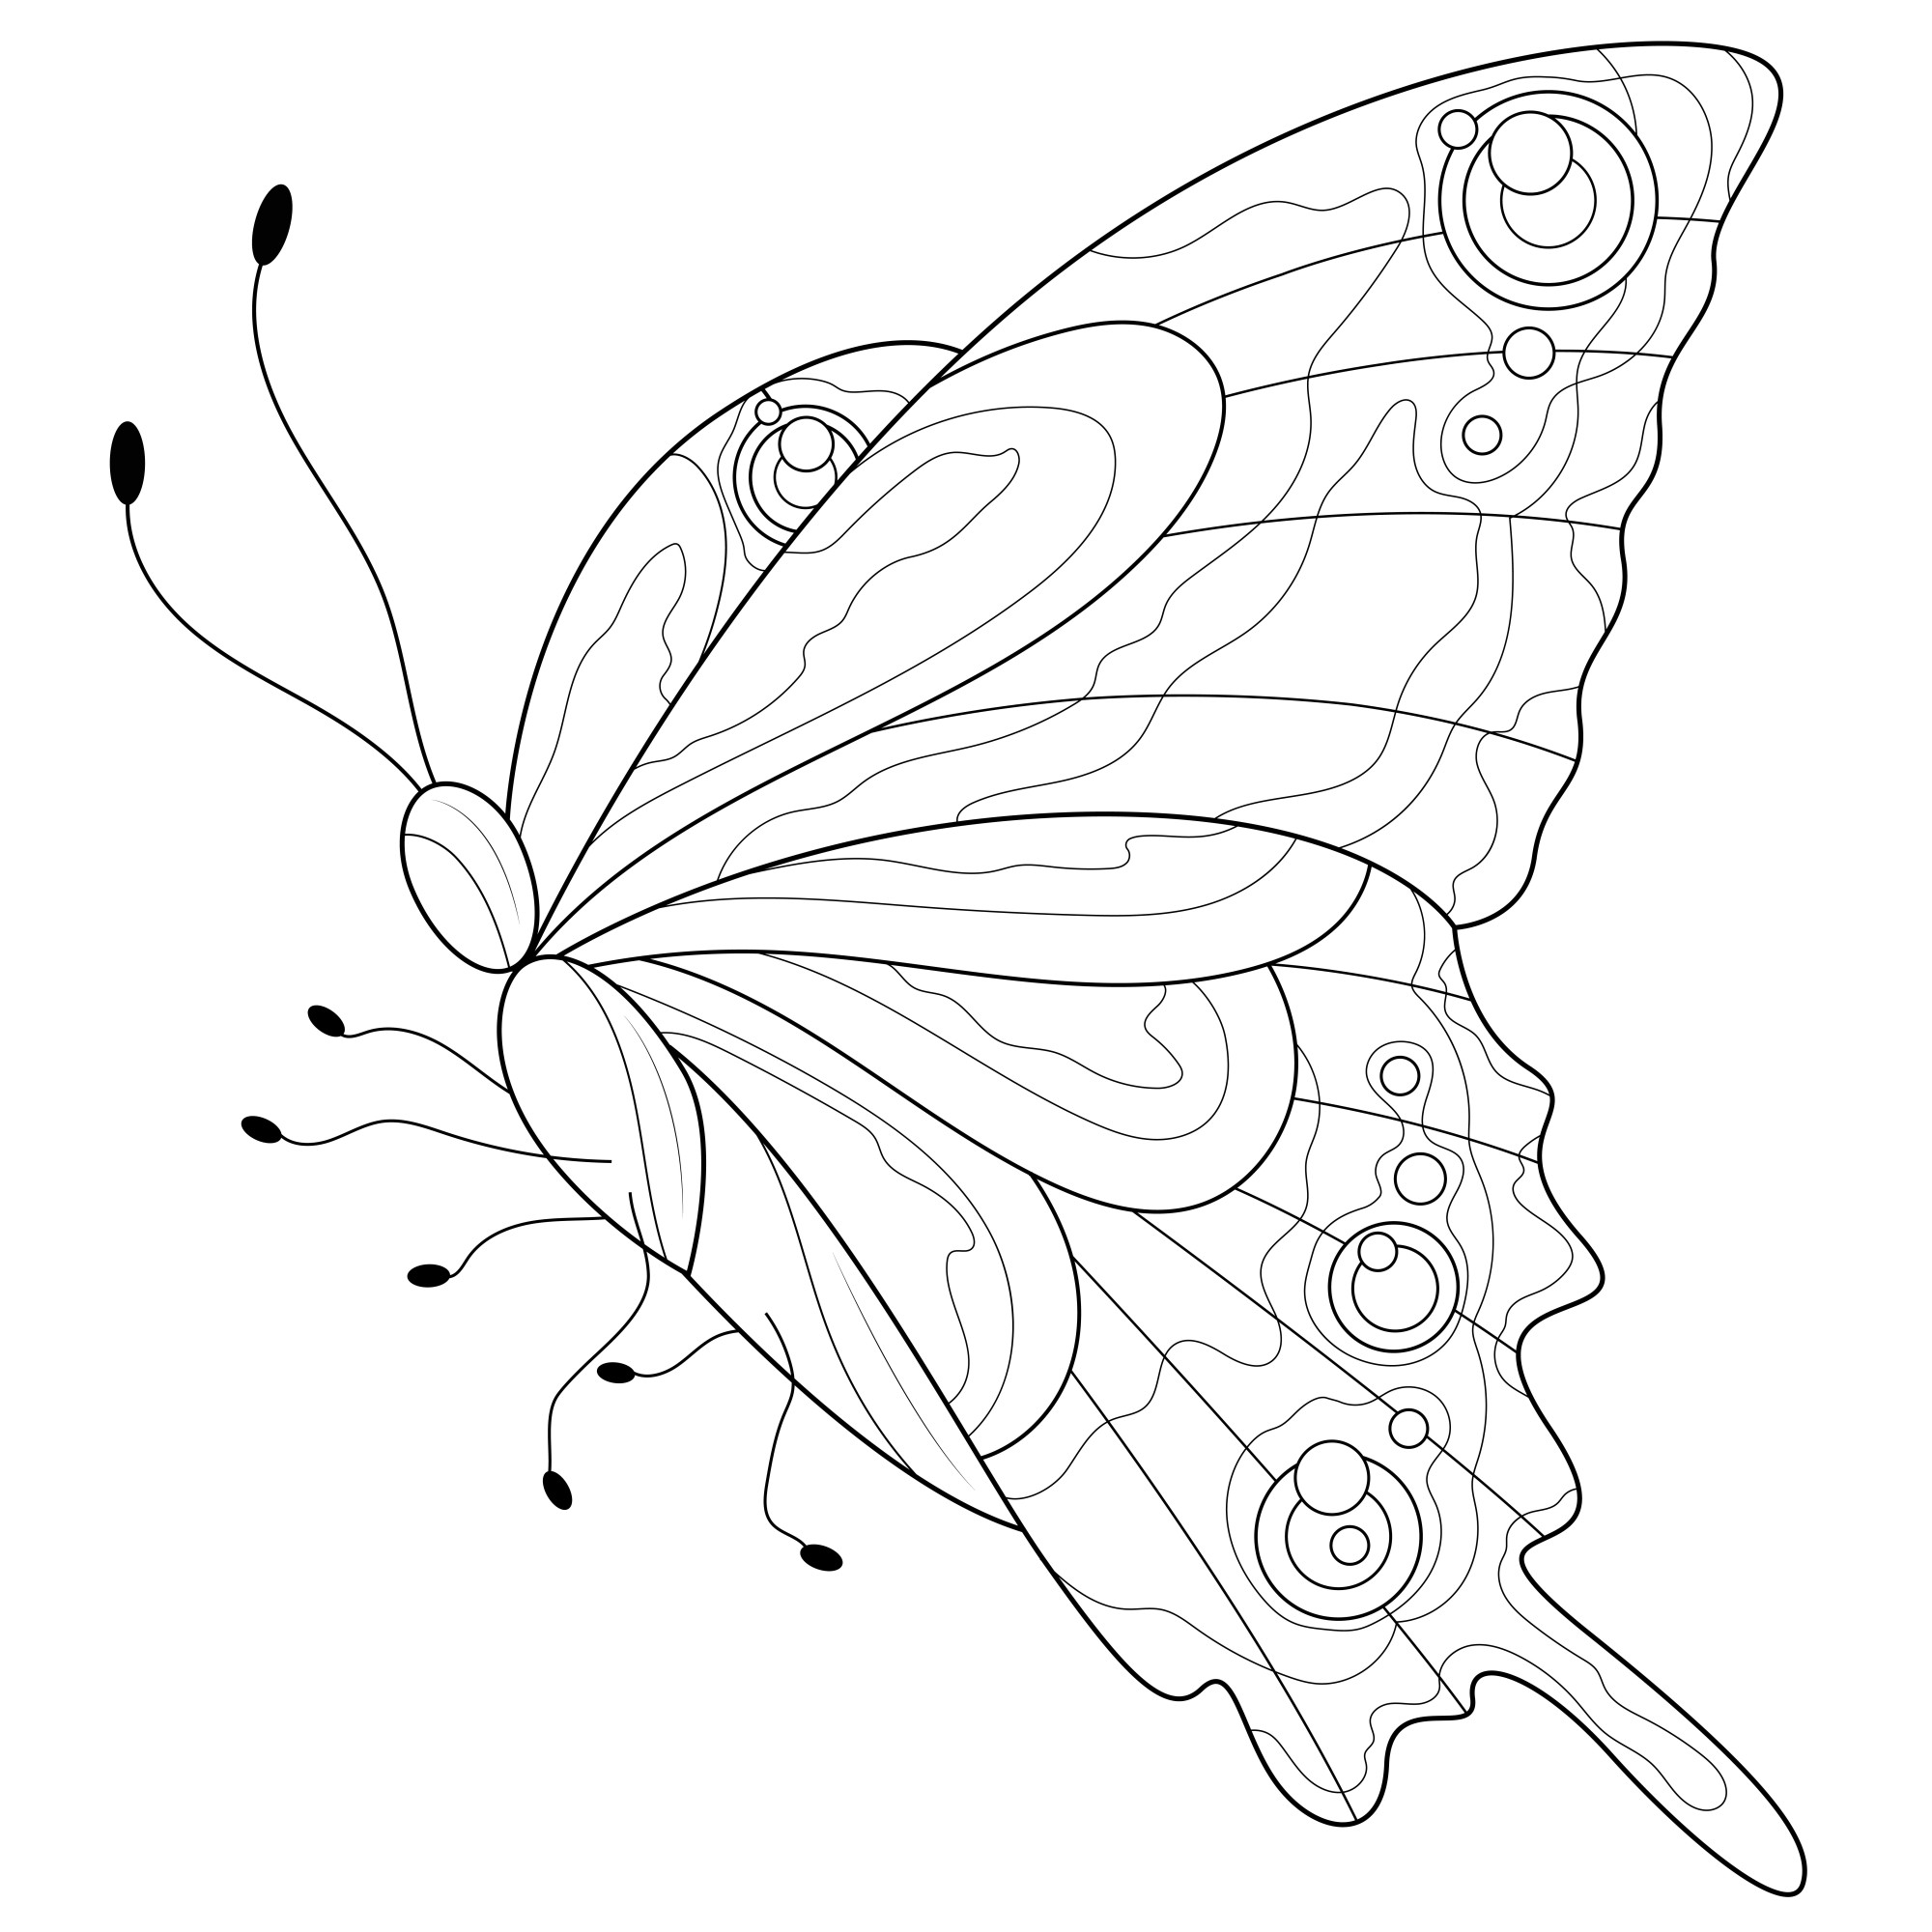 Раскраска для детей: узоры бабочки